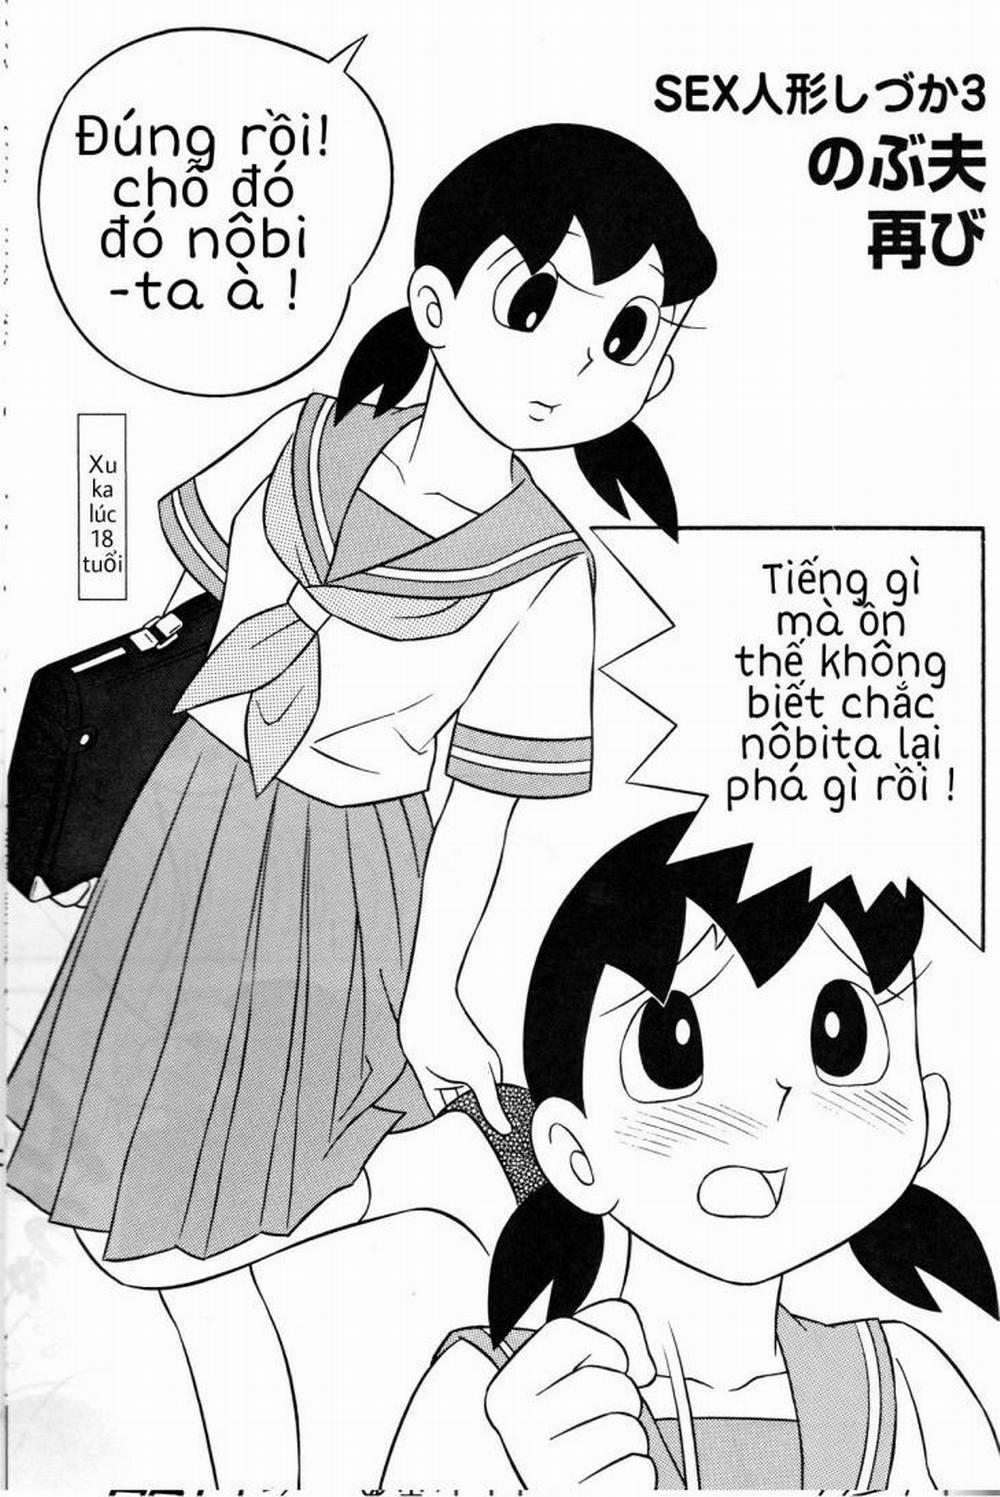 Tuyển Tập Doraemon Doujinshi 18+ Chương 2 T ng lai k di u Trang 1